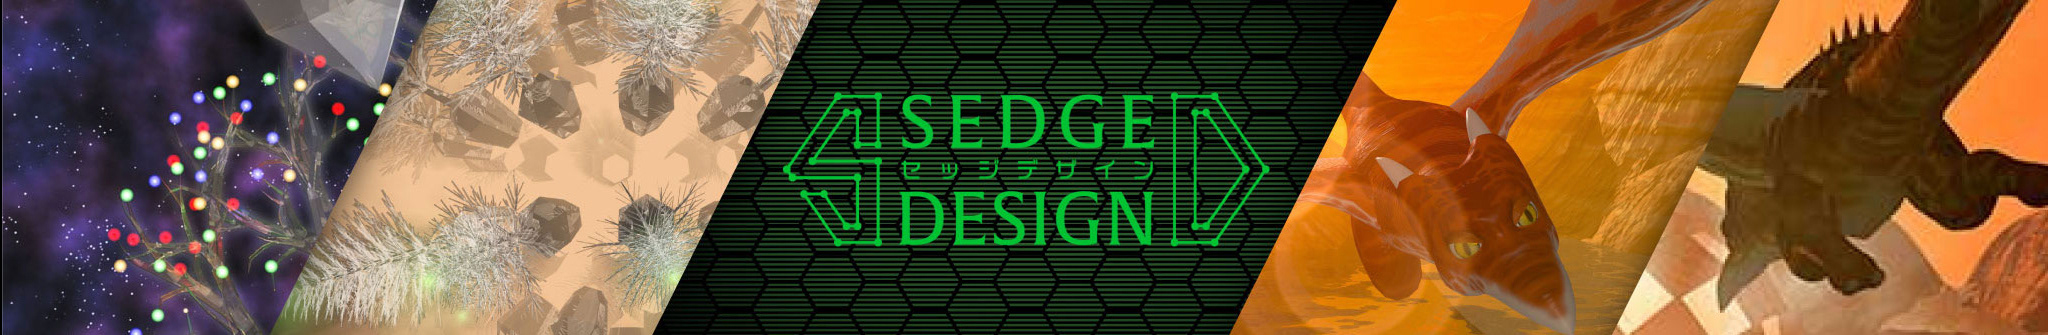 Sedge Design's profile banner